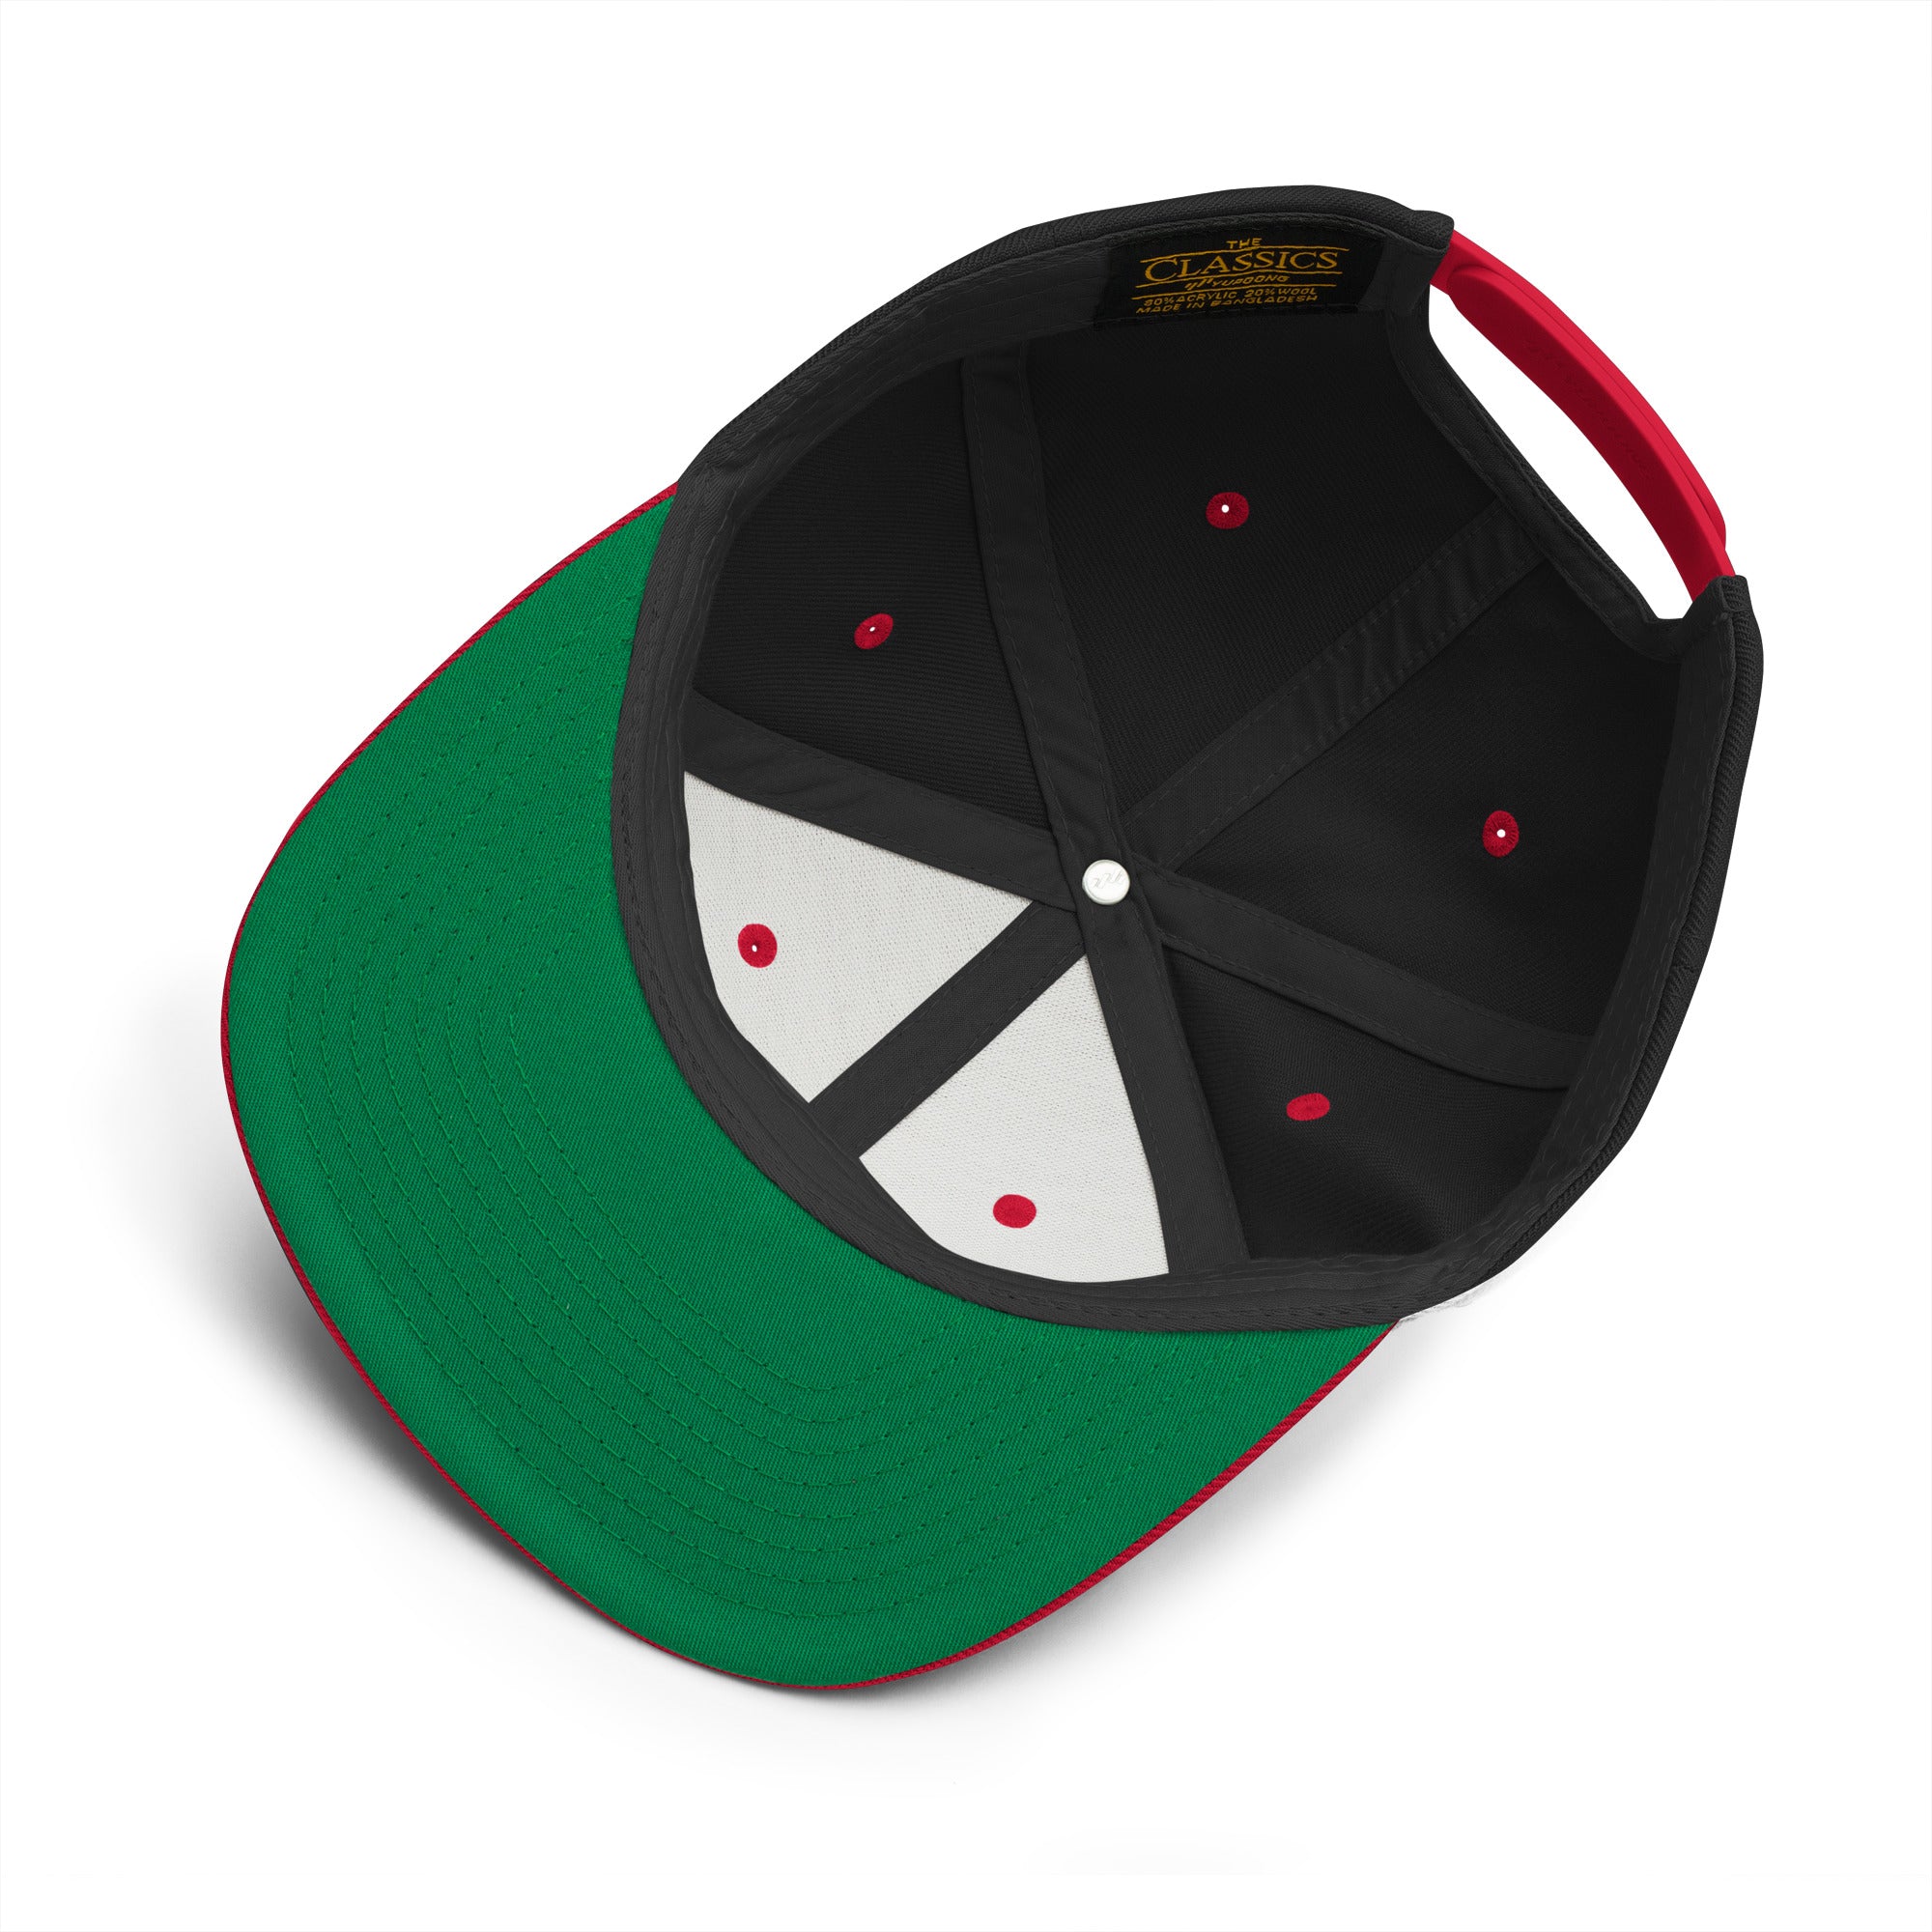 Hunter OG Snapback Hat Black/Red